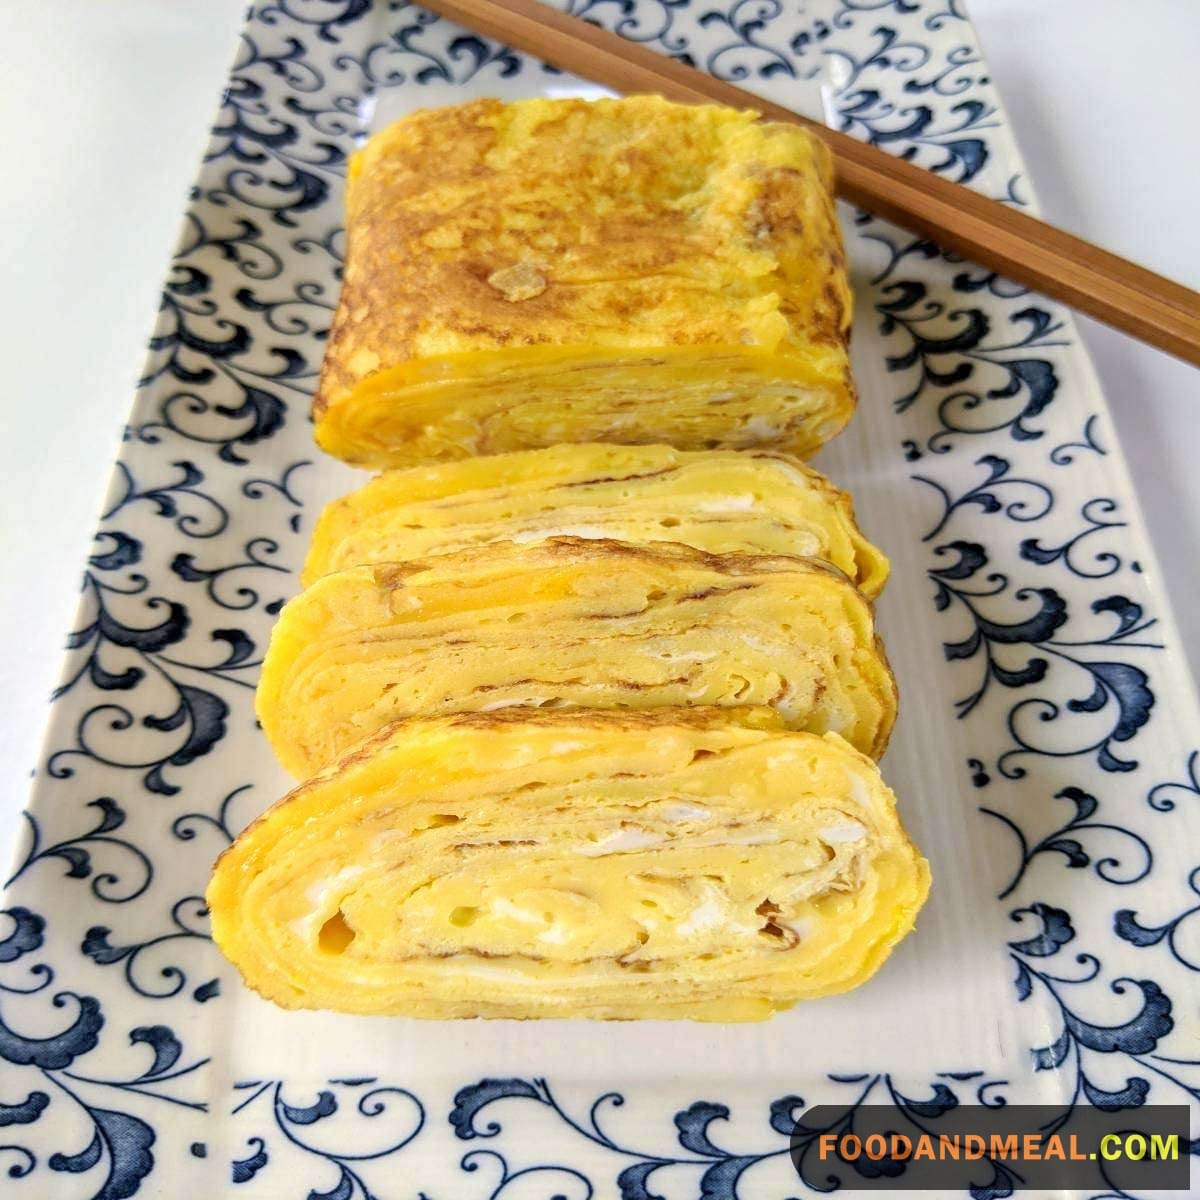 How To Make Tamagoyaki - Japanese Egg Omelets 13